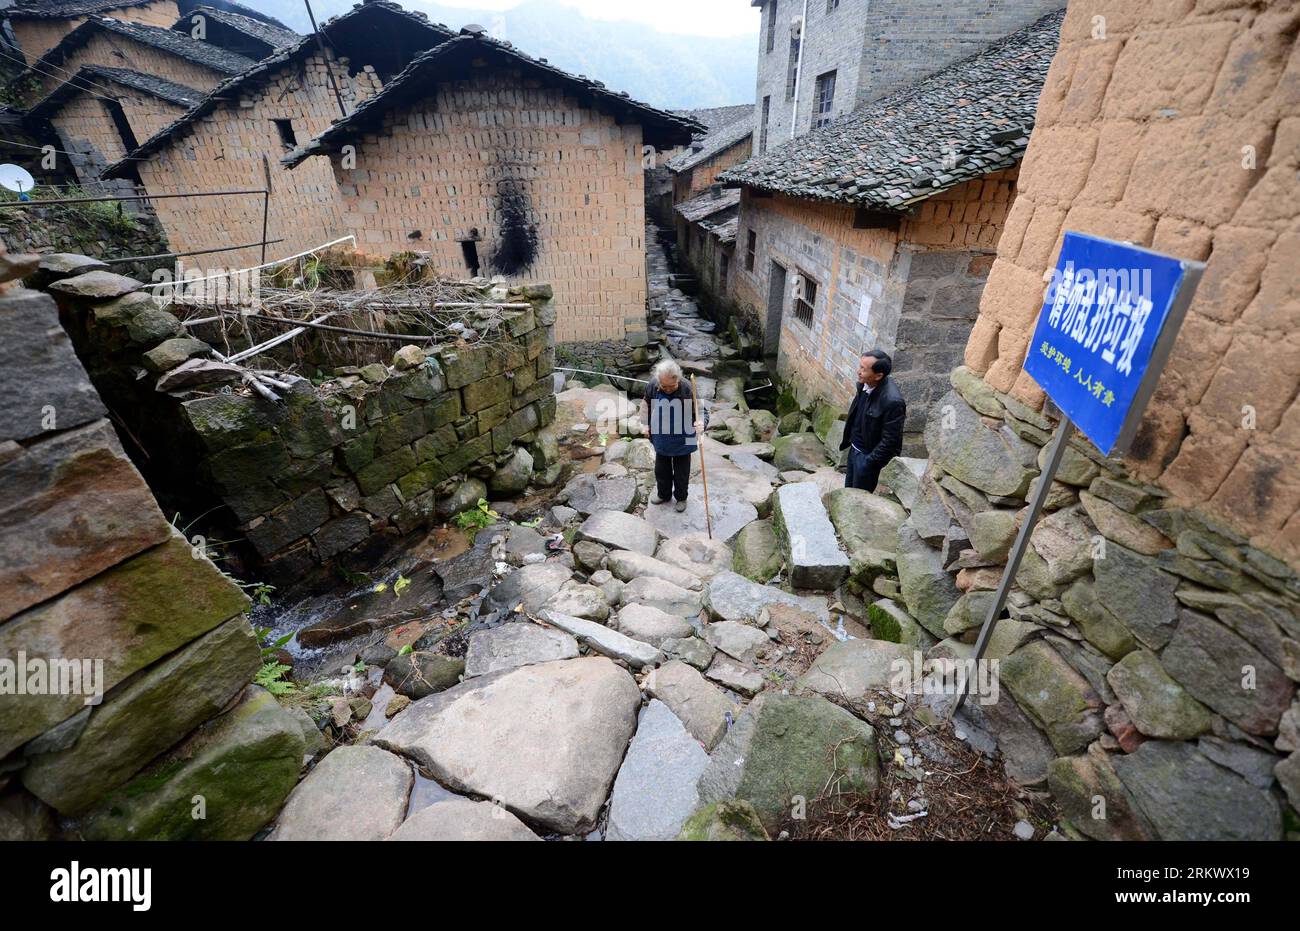 Bildnummer : 58764488 Datum : 23.11.2012 Copyright : imago/Xinhua XIN GAN, 23 novembre 2012 - une vieille femme marche sur une ruelle pavée de pierres dans le village de Zaoshi, à 40 kilomètres du comté de Xin gan, province de Jiangxi dans l'est de la Chine, le 23 novembre 2012. Le village de Zaoshi est situé sur une colline à l'altitude de 600 mètres, derrière laquelle se trouve la montagne Shilong couverte de pierres grotesques et de rochers. En raison du mauvais état de la circulation, la plupart des villageois se sont déplacés au pied de la colline, laissant des dizaines de personnes âgées dans le vieux village. Depuis qu'une route au village a été construite en 2011, de plus en plus de visiteurs Banque D'Images